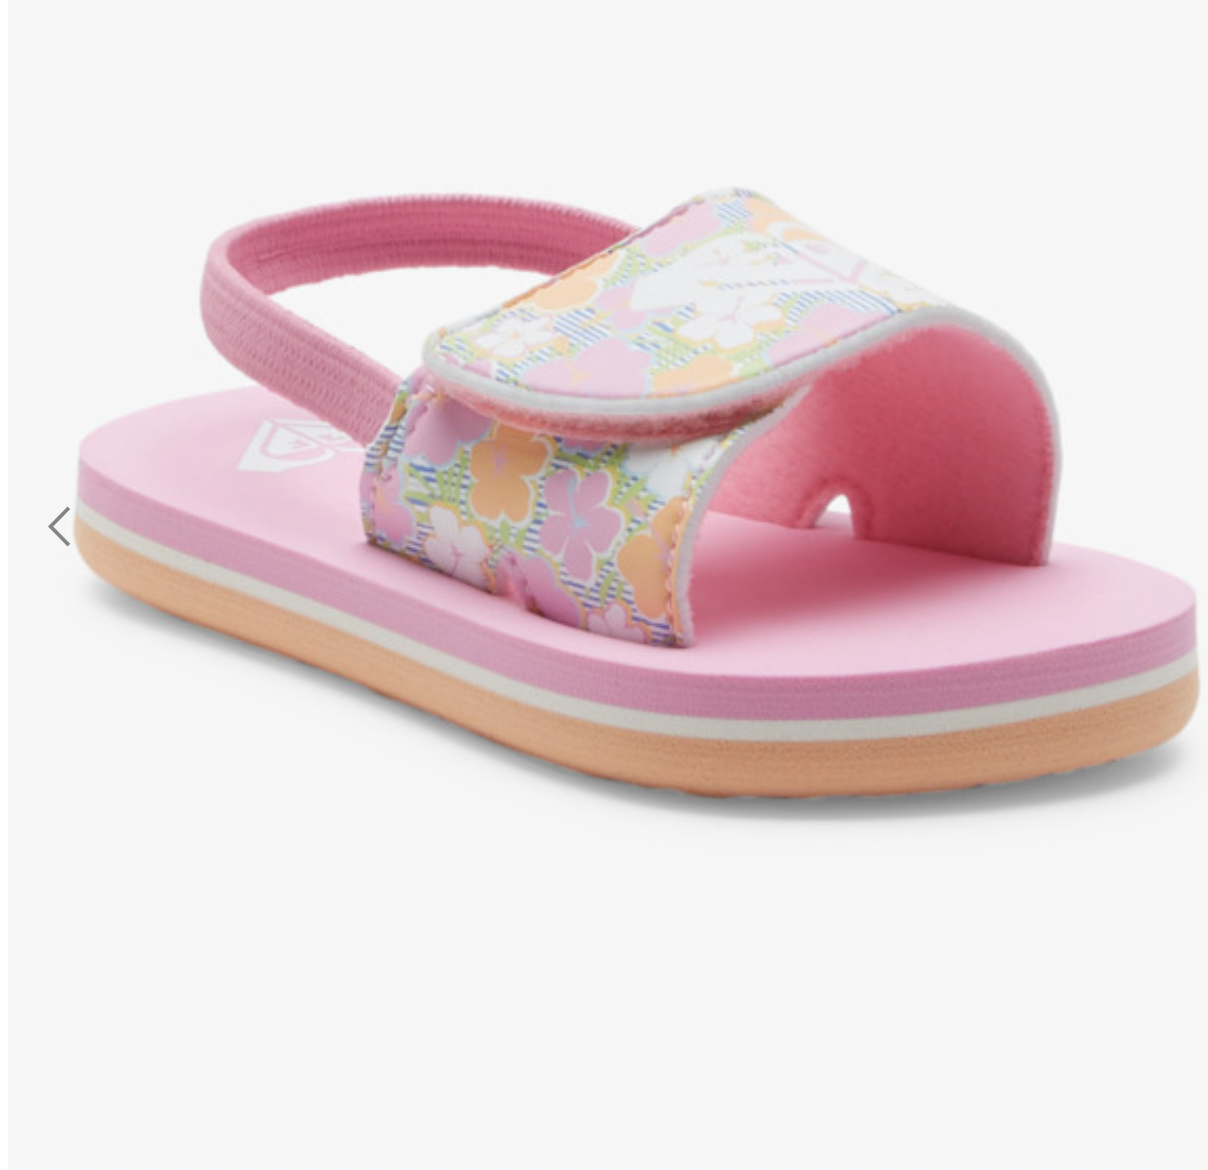 Roxy Finn - Sandals for Girls